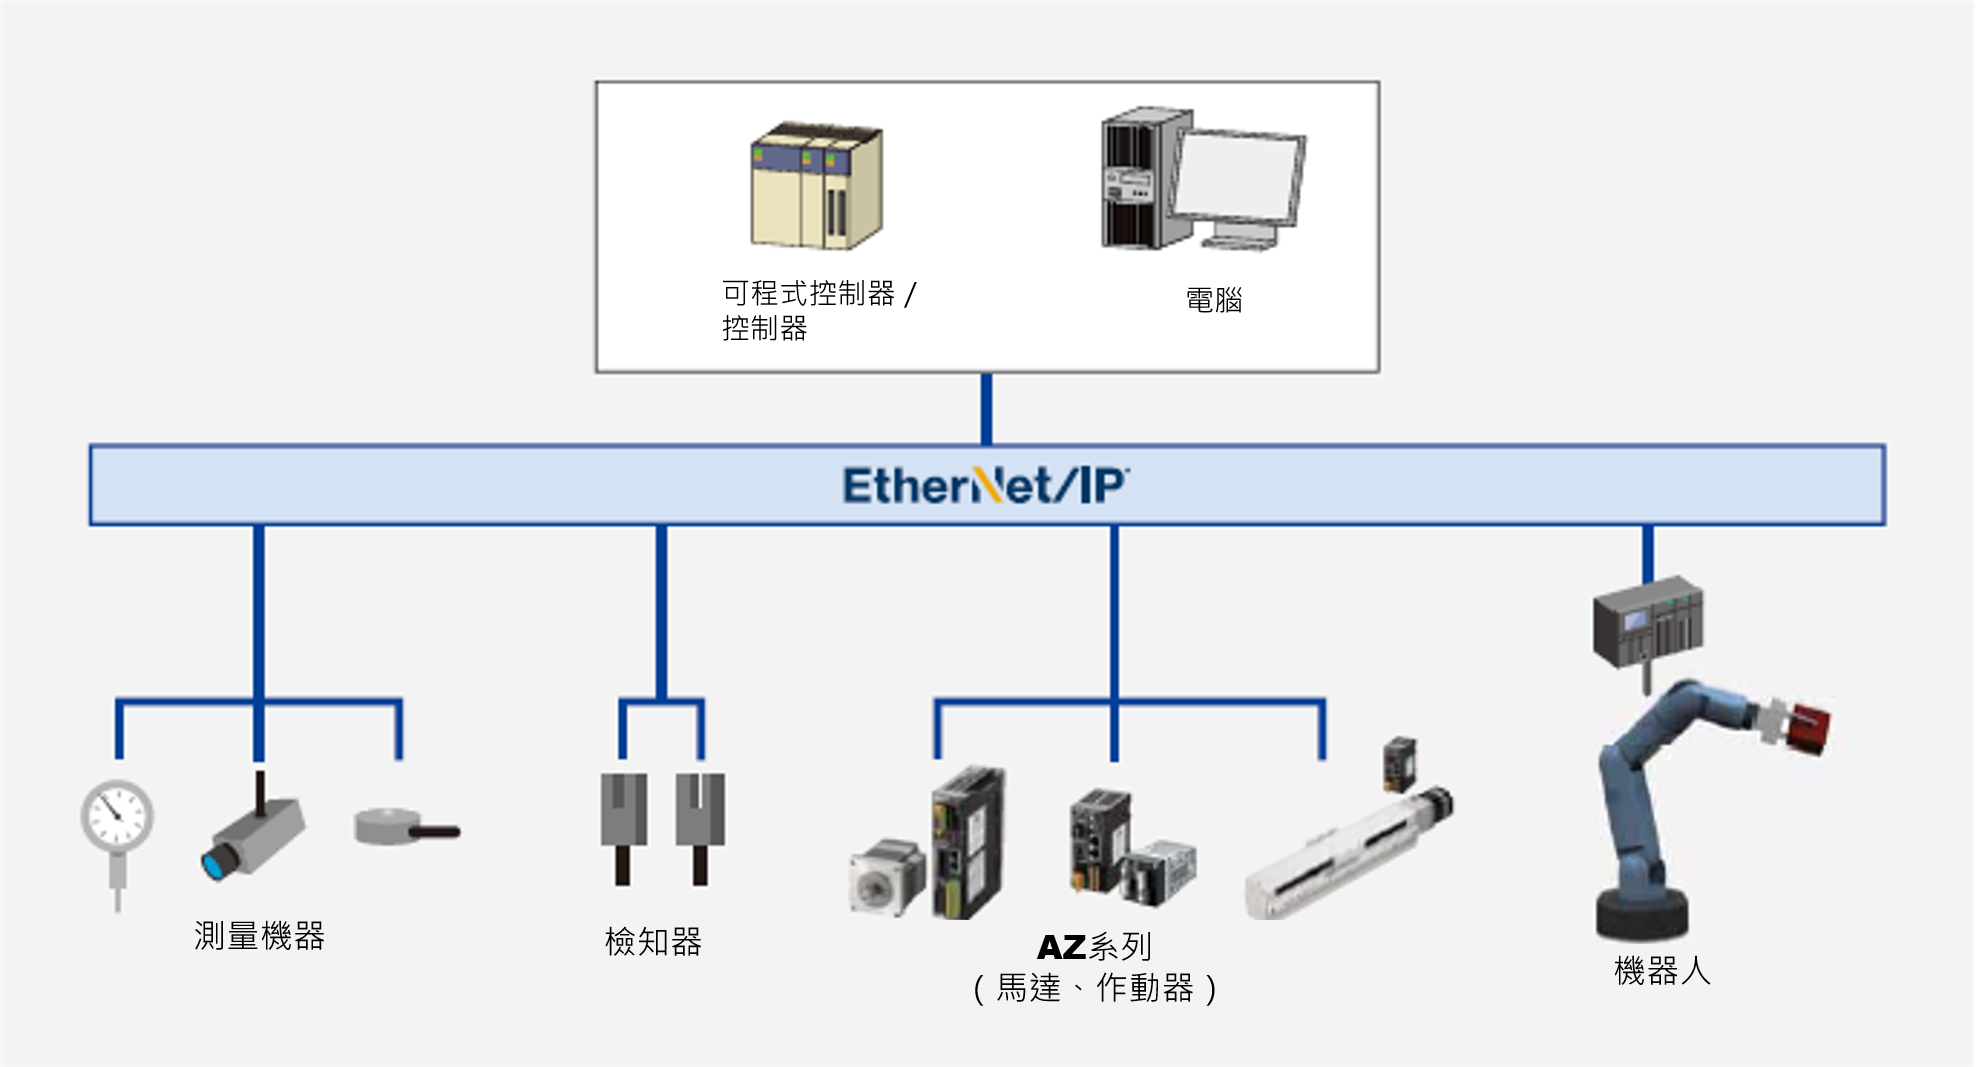 東方馬達 Oriental motor αSTEP 步進馬達 AZ (EtherNet驅動器)　透過連接 EtherNet/IP 主站，可從網路直接控制